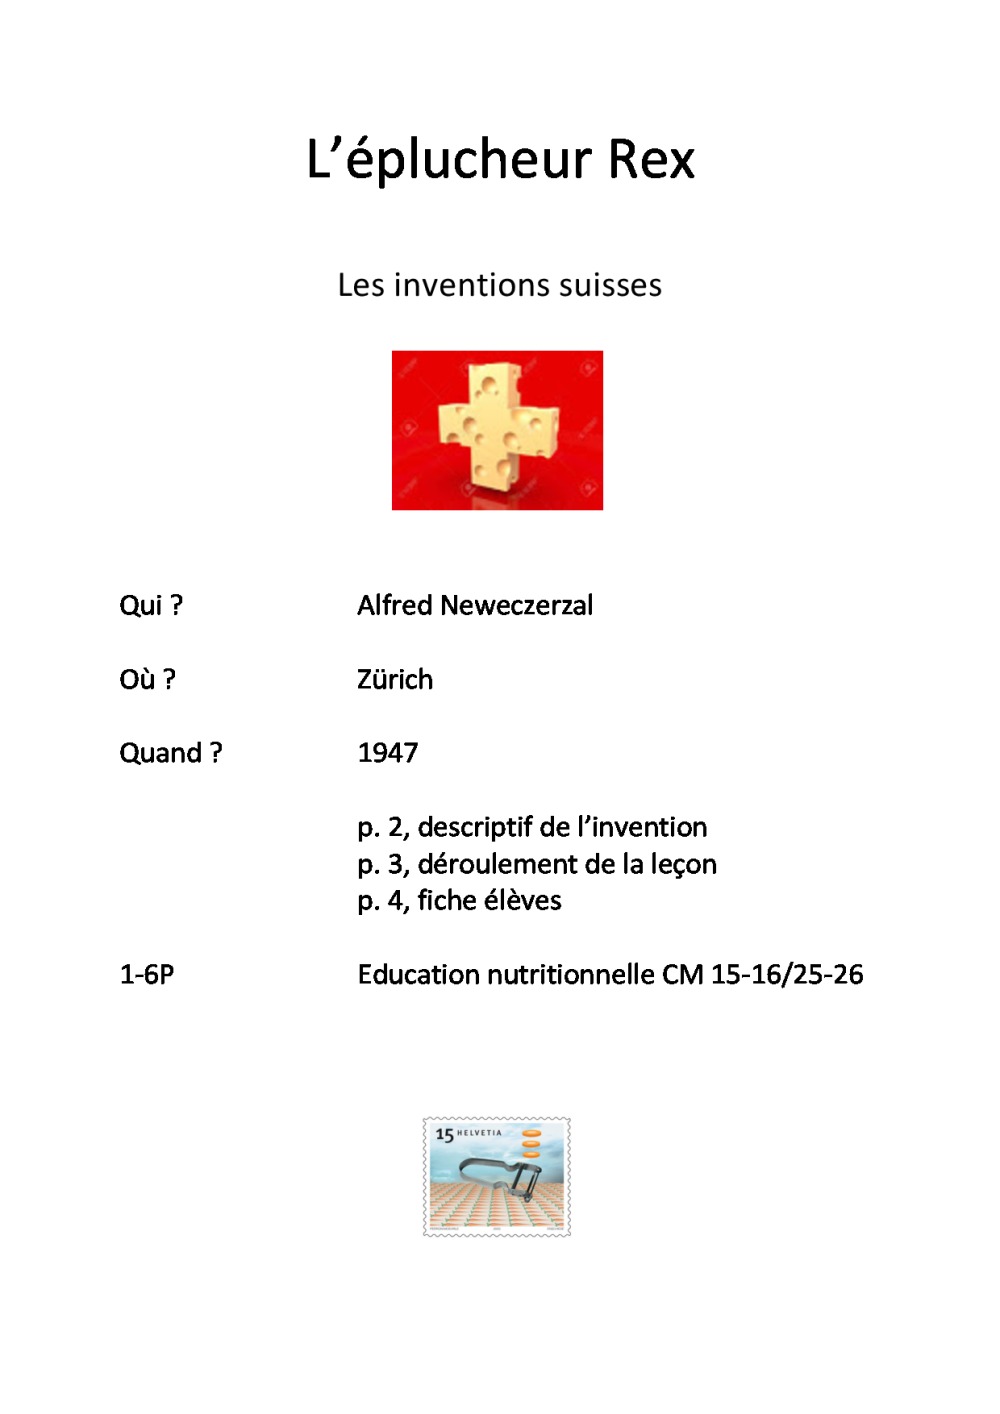 Inventions suisses : l'éplucheur Rex